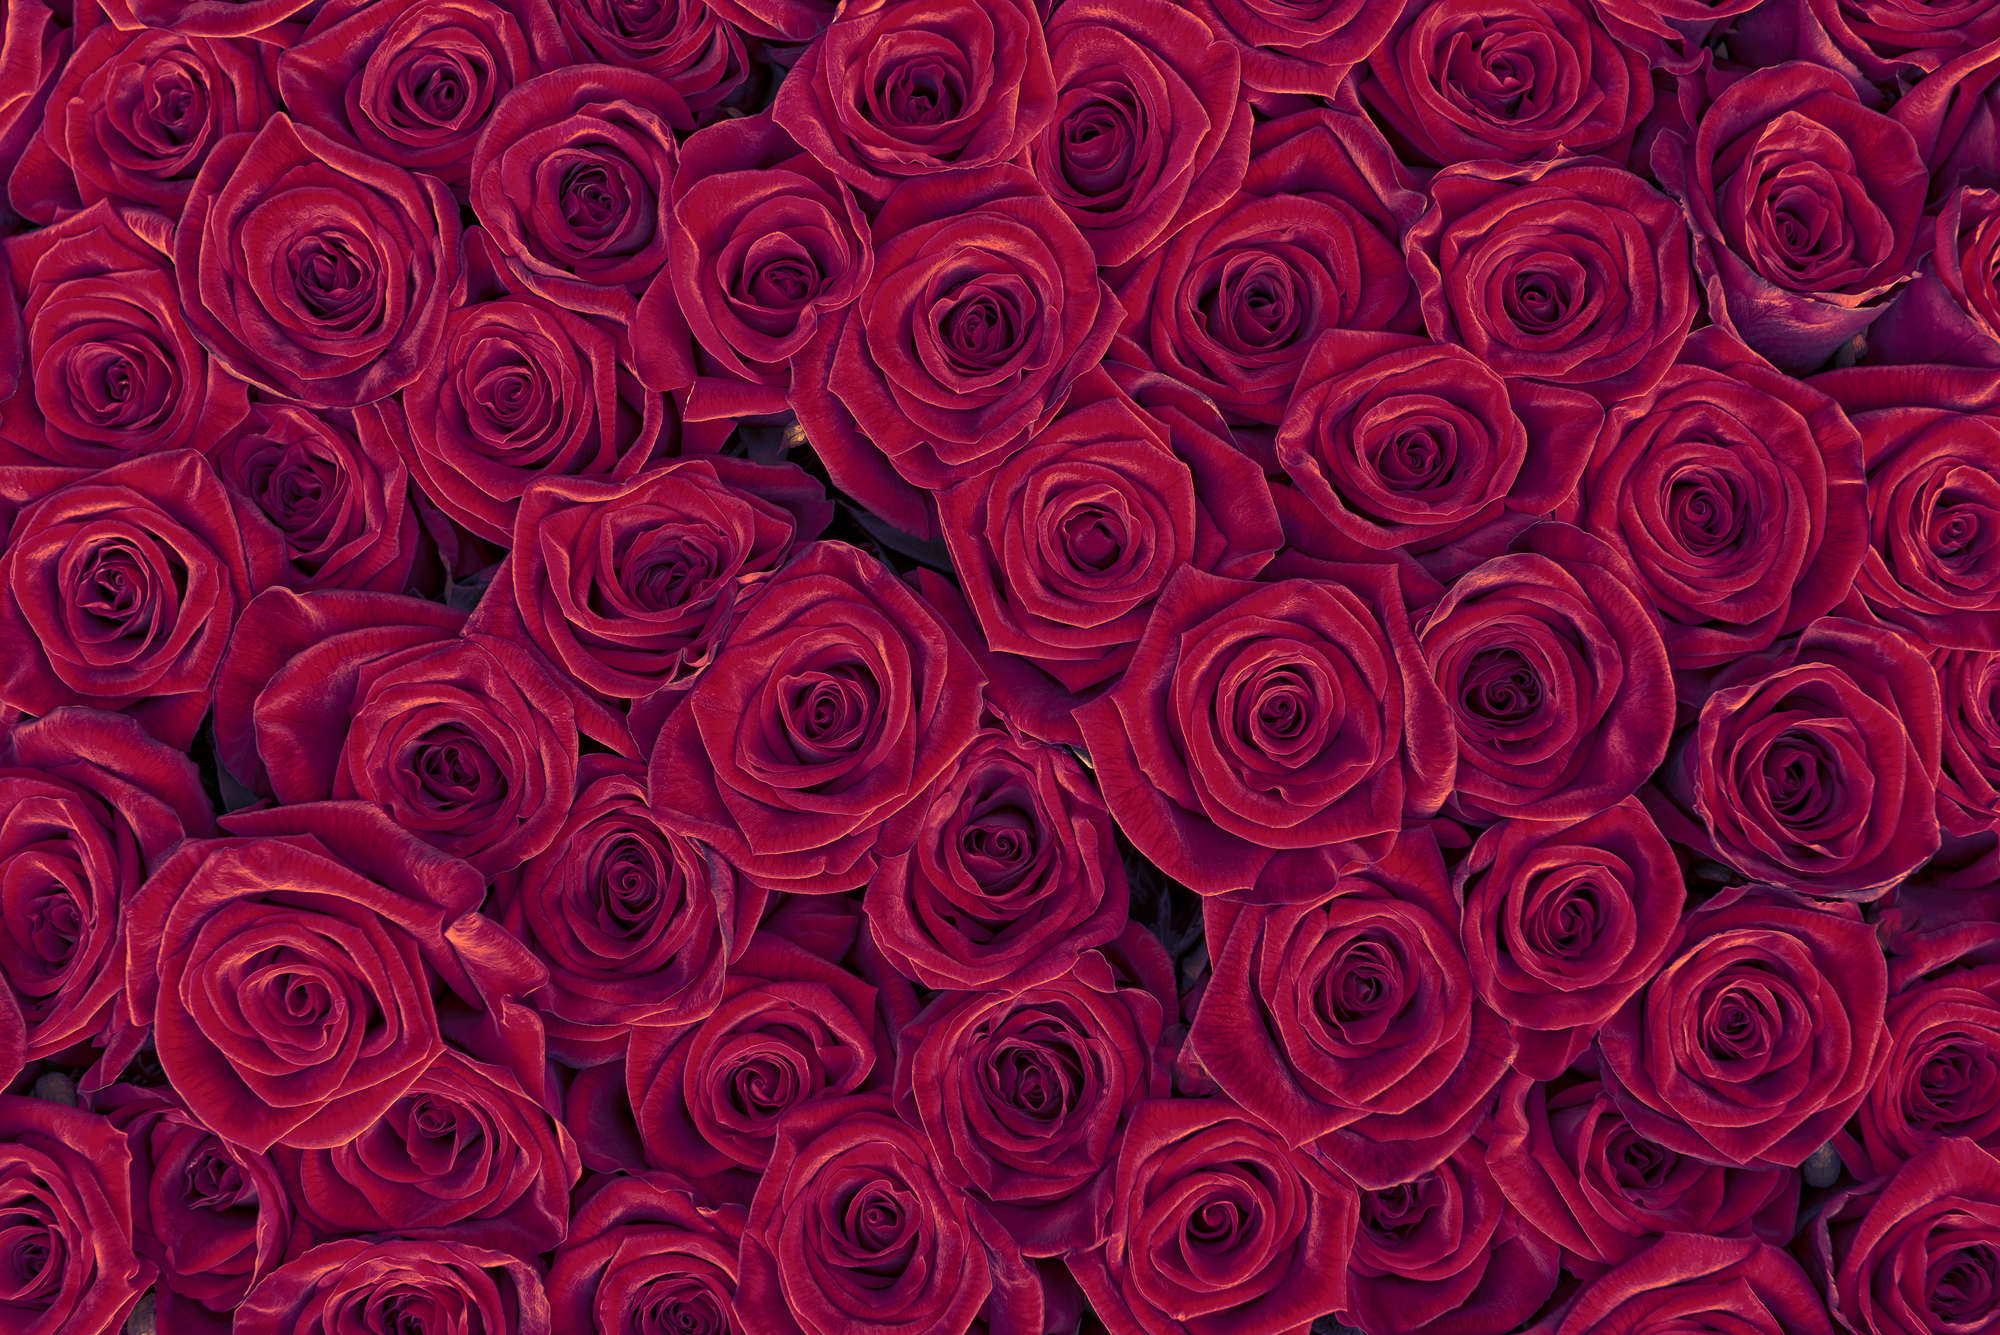             Papier peint végétal Roses rouges sur intissé lisse mat
        